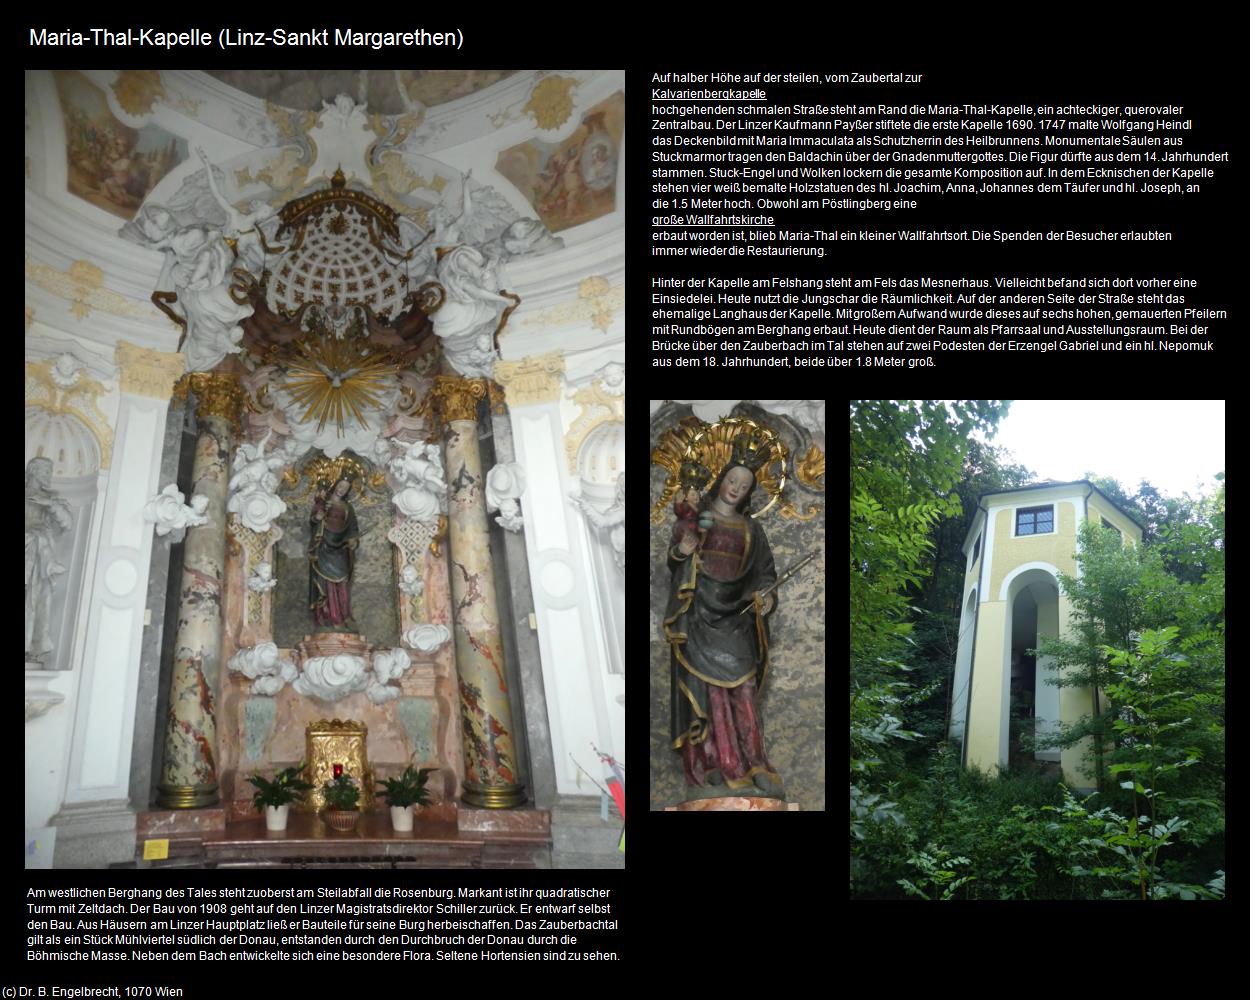 Maria-Thal-Kapelle (Sankt Margarethen) (Linz) in Kulturatlas-OBERÖSTERREICH(c)B.Engelbrecht